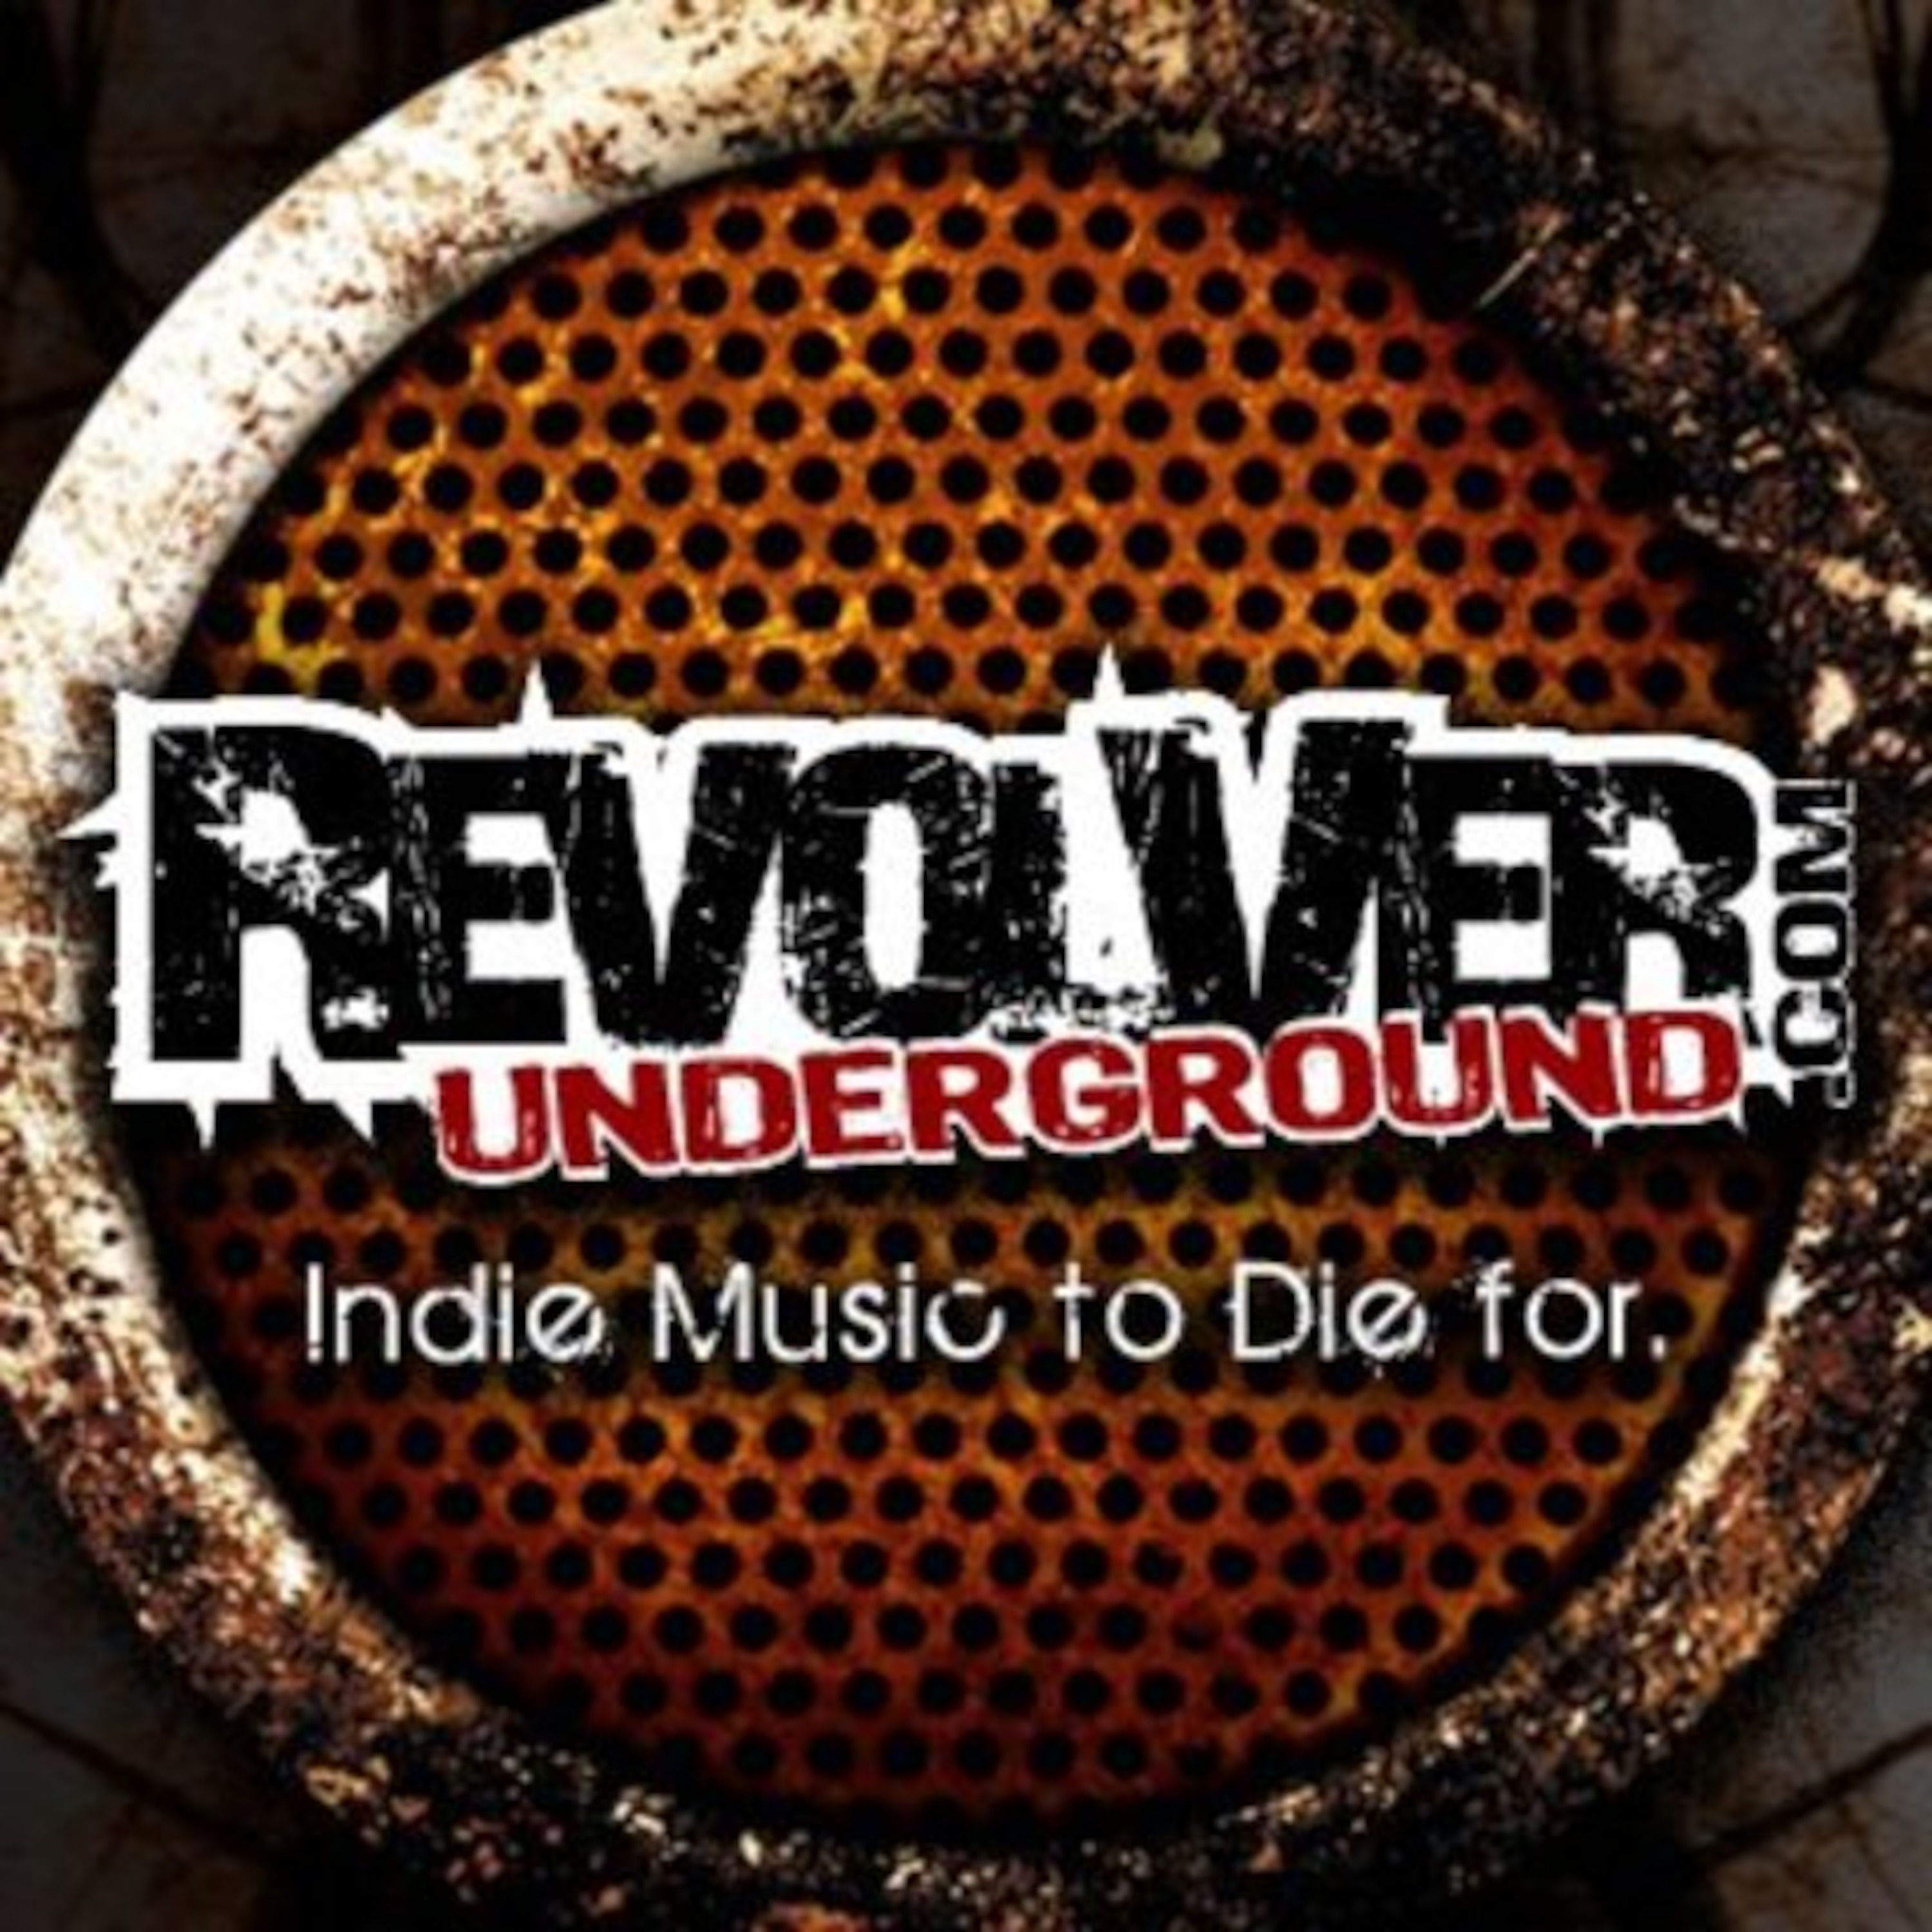 Revolver Underground